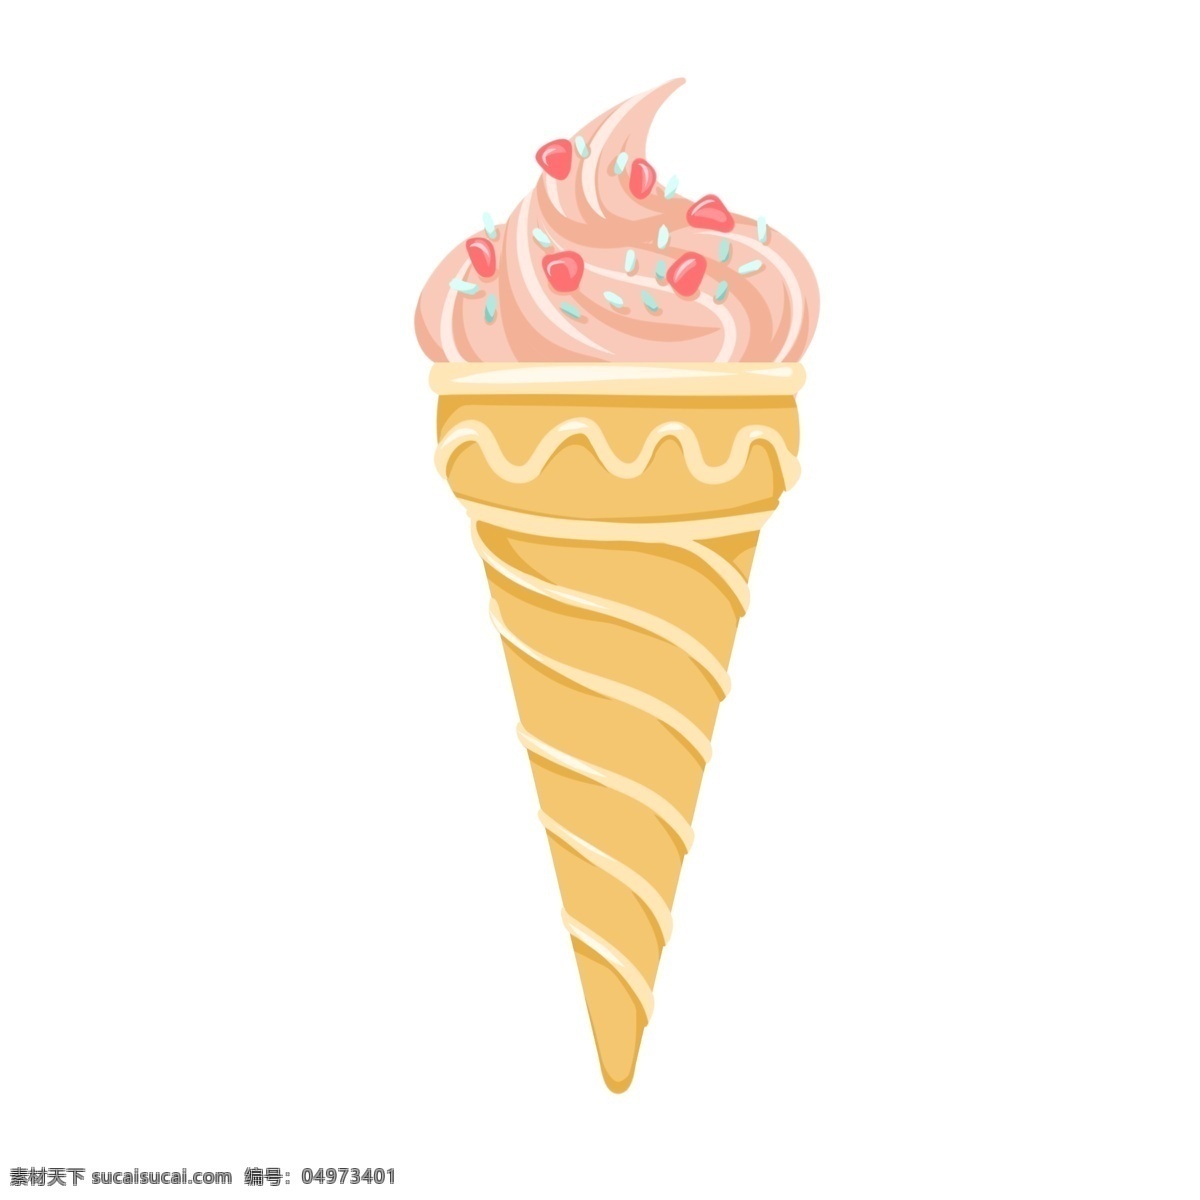 粉色 可爱 甜甜 筒 冰激凌 甜品 清爽 夏日 美味 可口